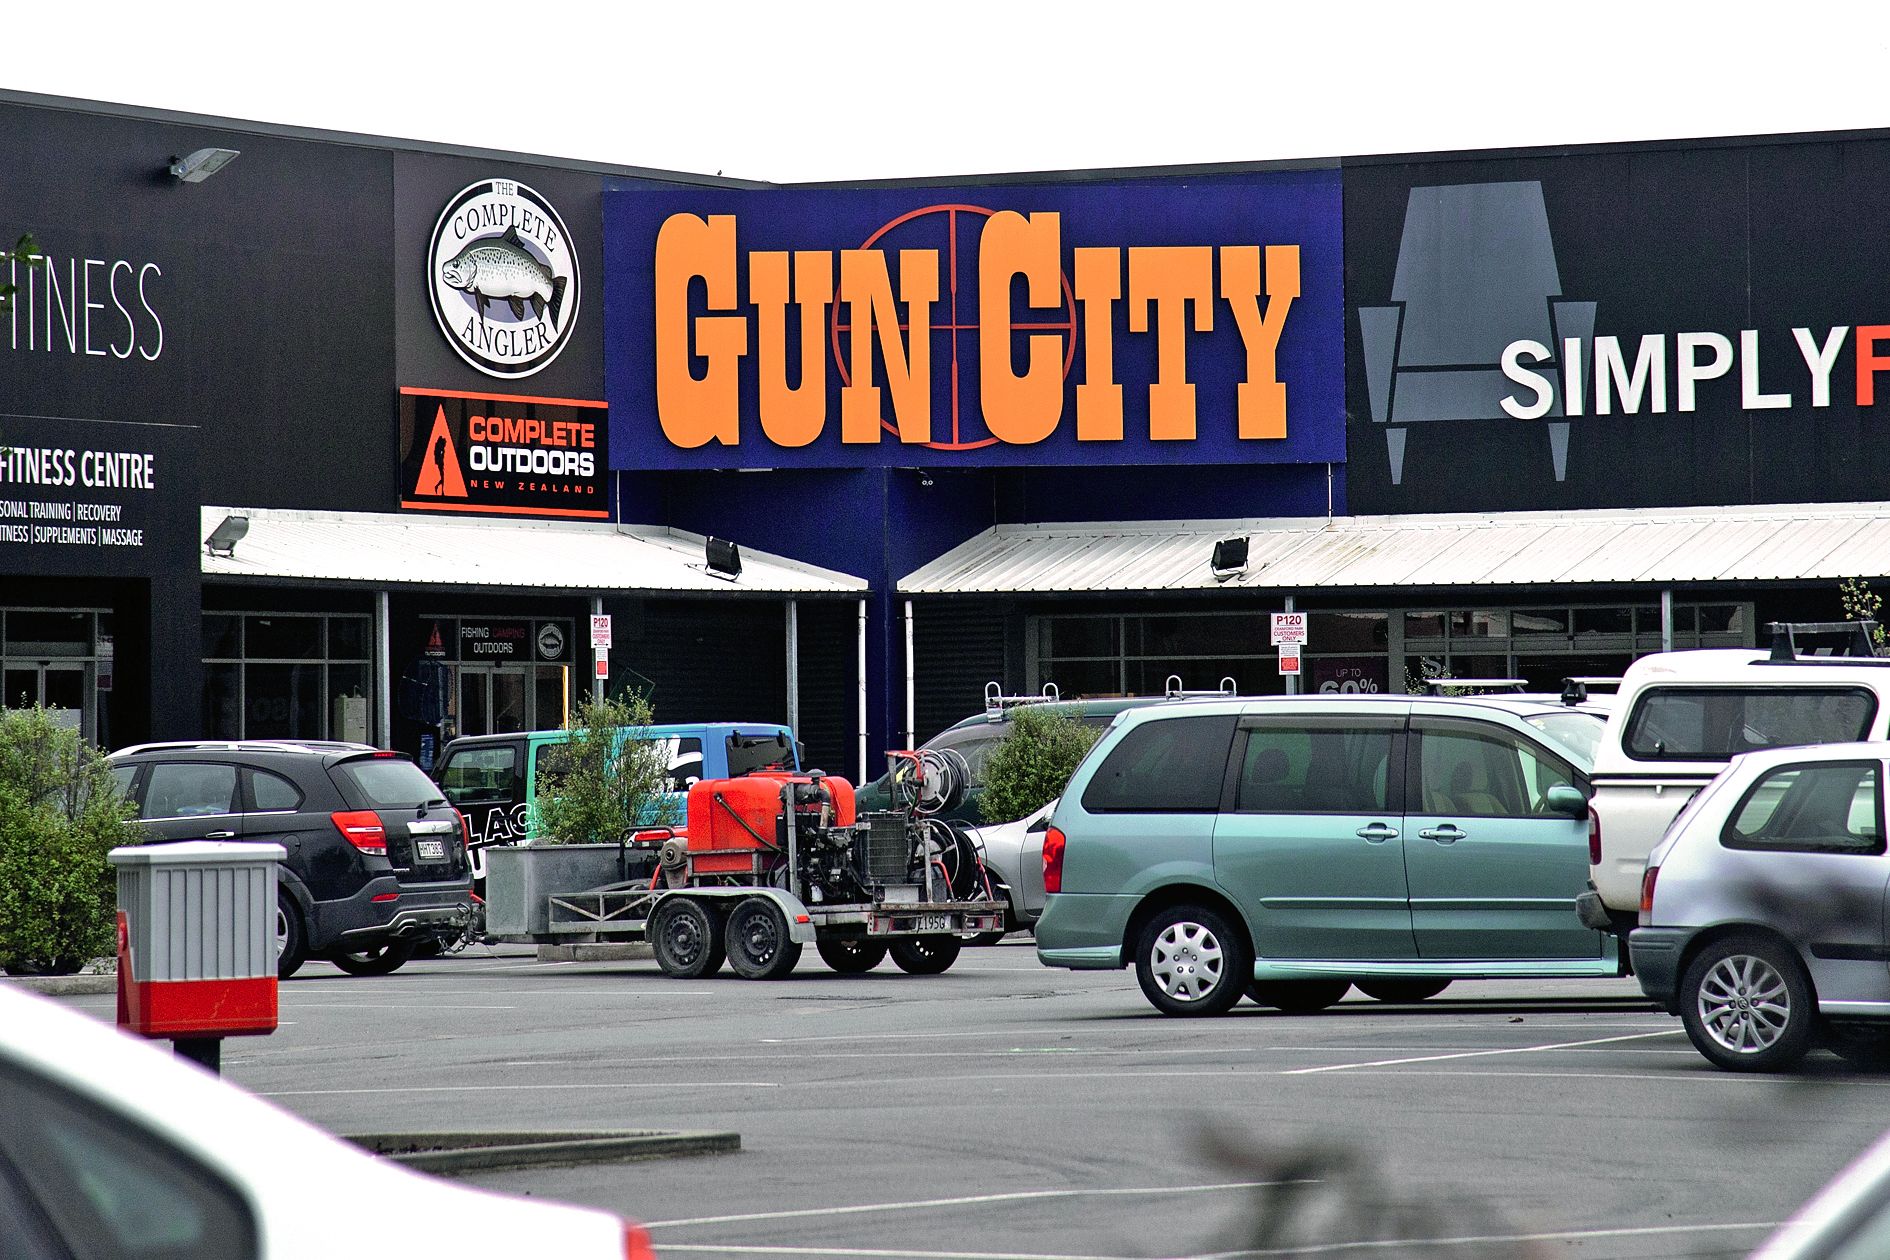 L’enseigne Gun City a vendu les armes au tueur. Les organisateurs de la plus grande foire aux armes de Nouvelle-Zélande, le Kumeu Militaria Show, près d’Auckland, ont annoncé l’annulation de l’événement Photo AFP